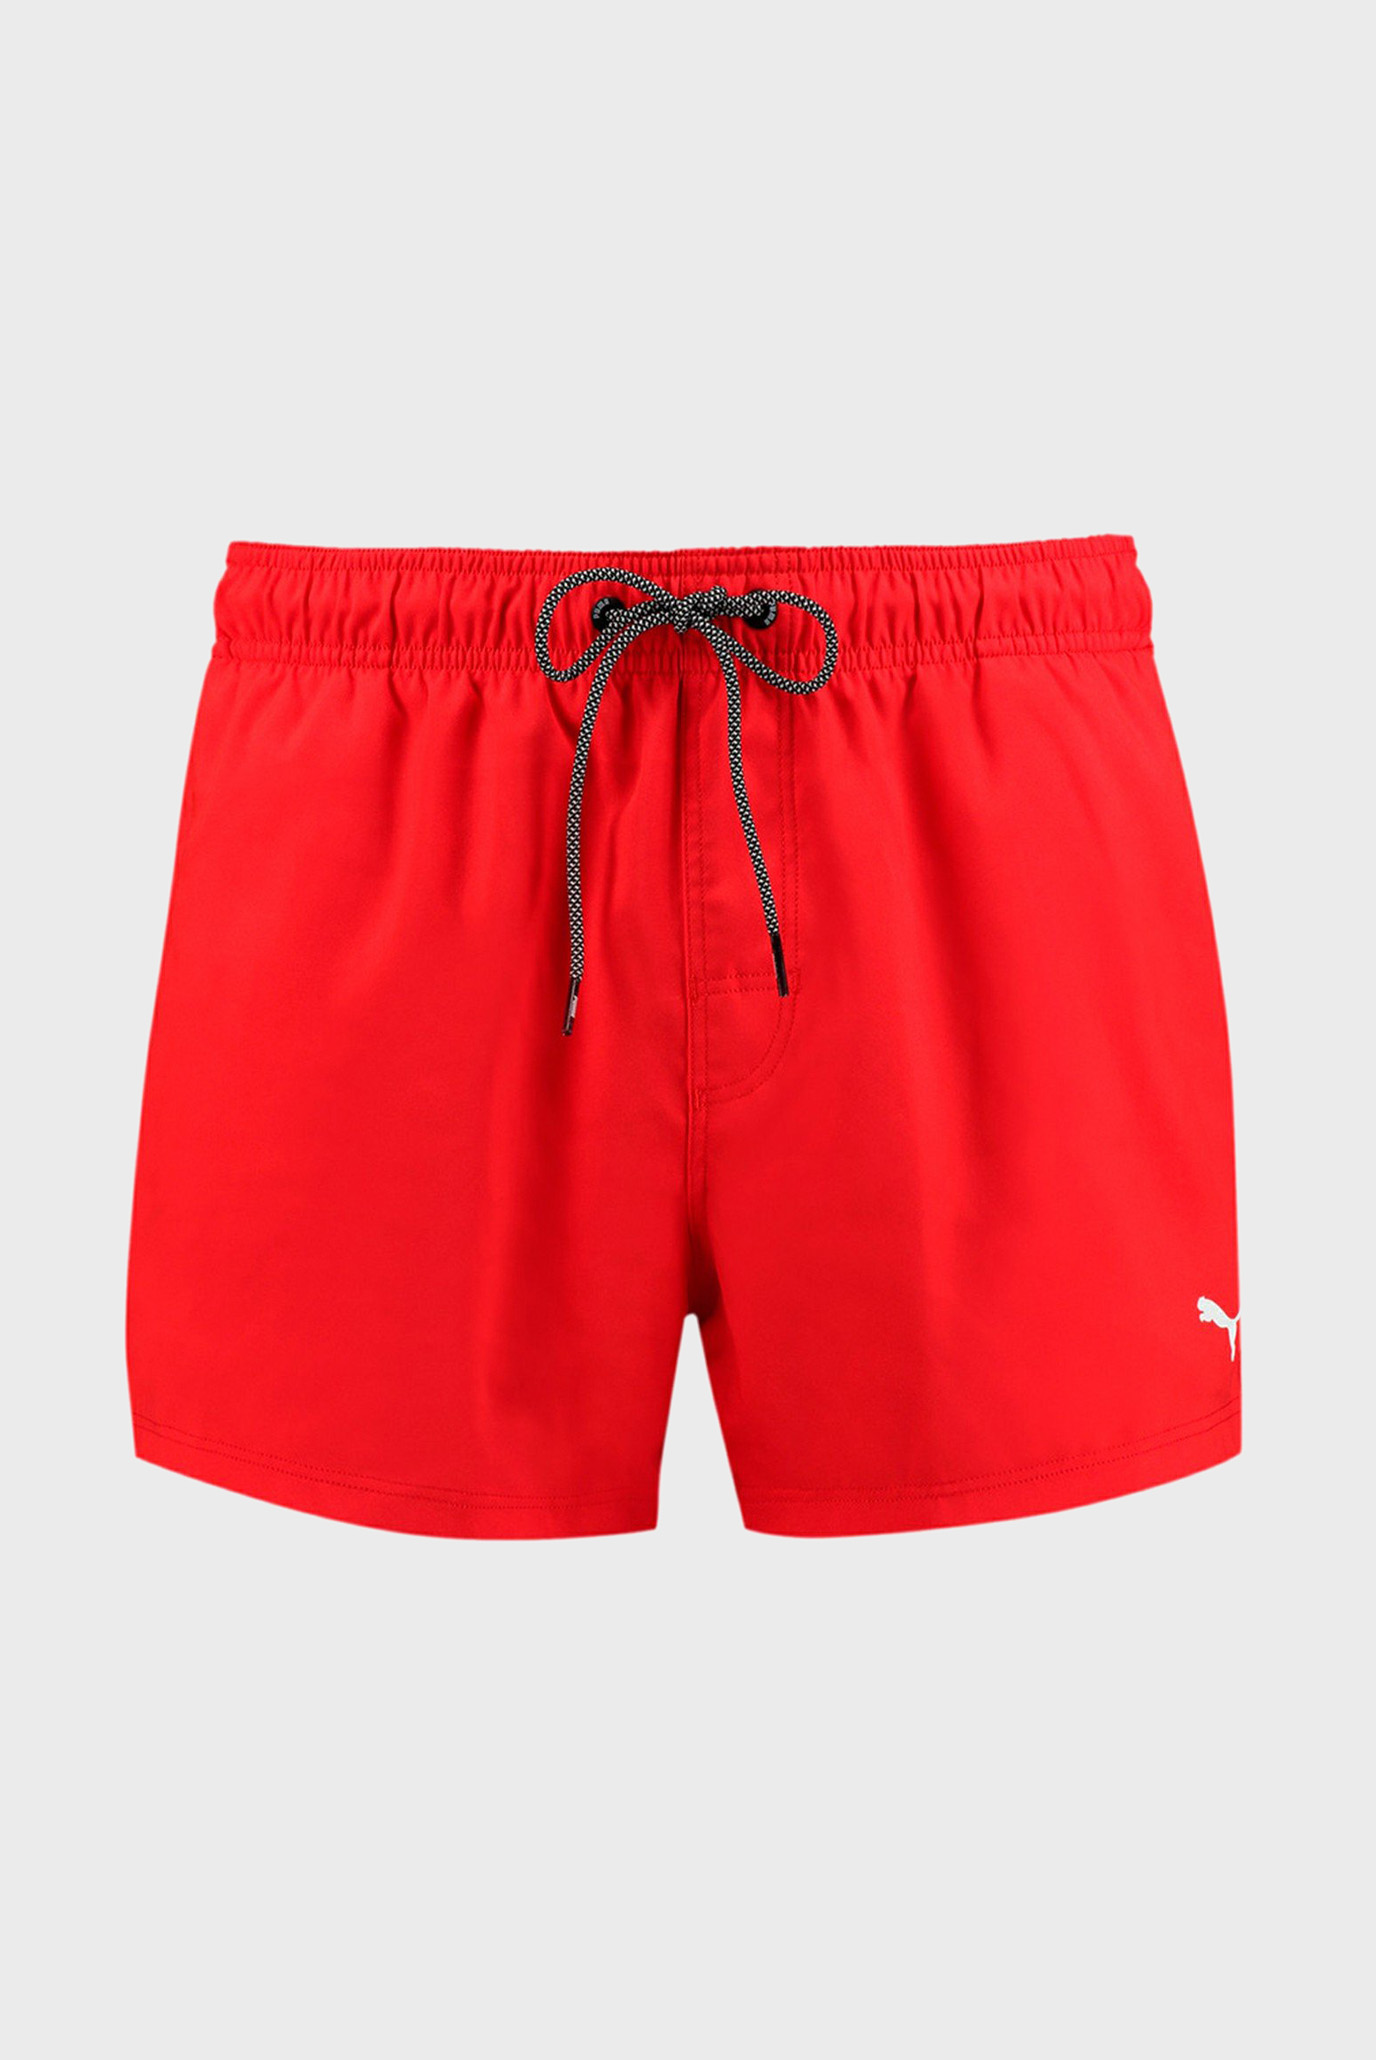 Мужские красные плавательные шорты PUMA Swim Men Short Length S 1